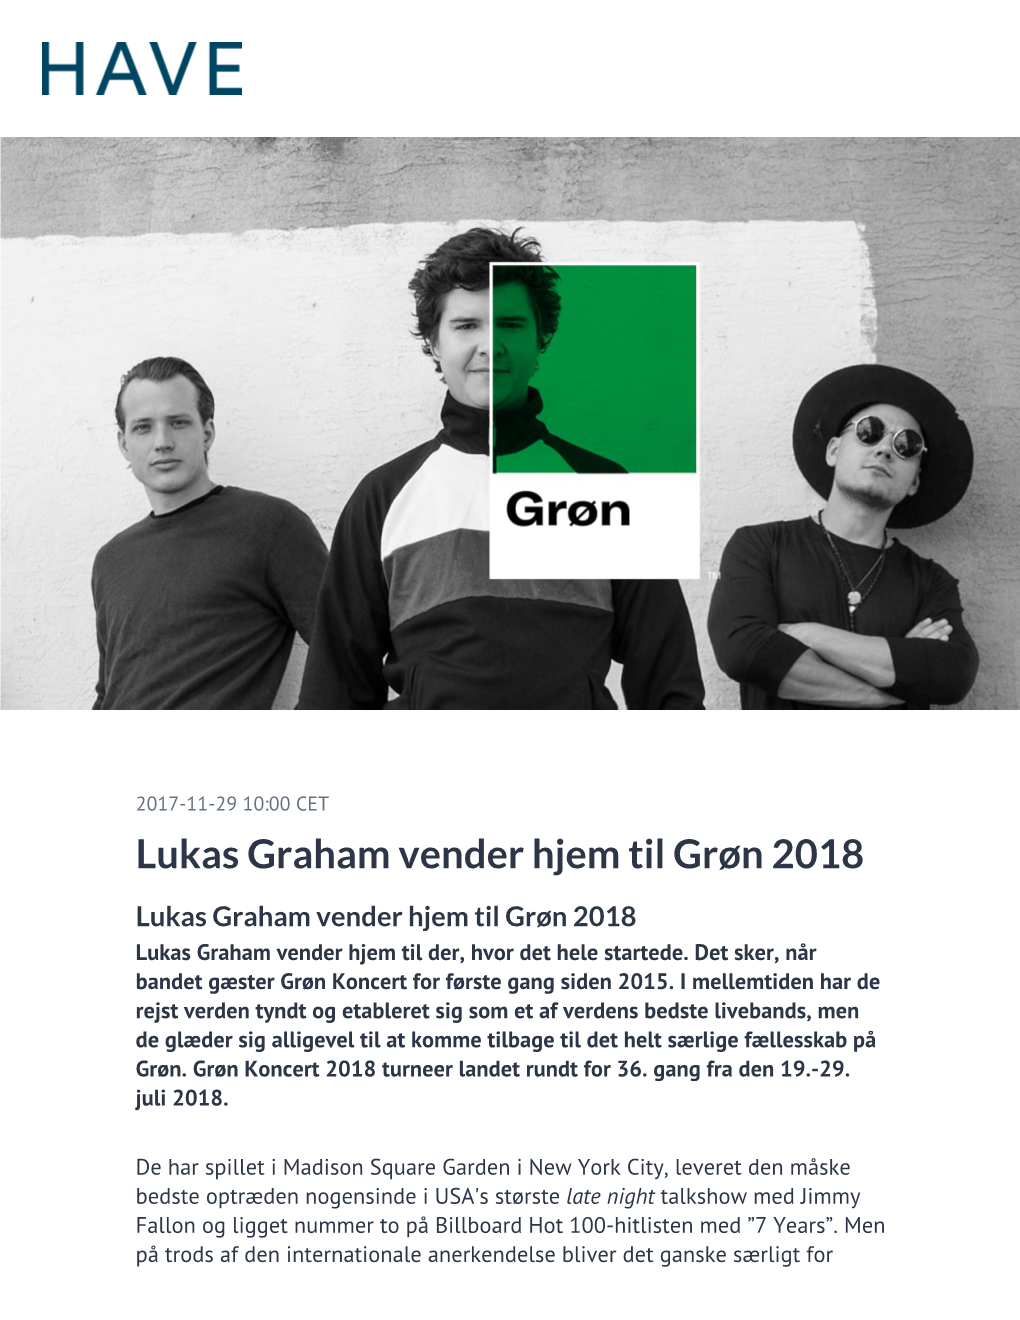 Lukas Graham Vender Hjem Til Grøn 2018